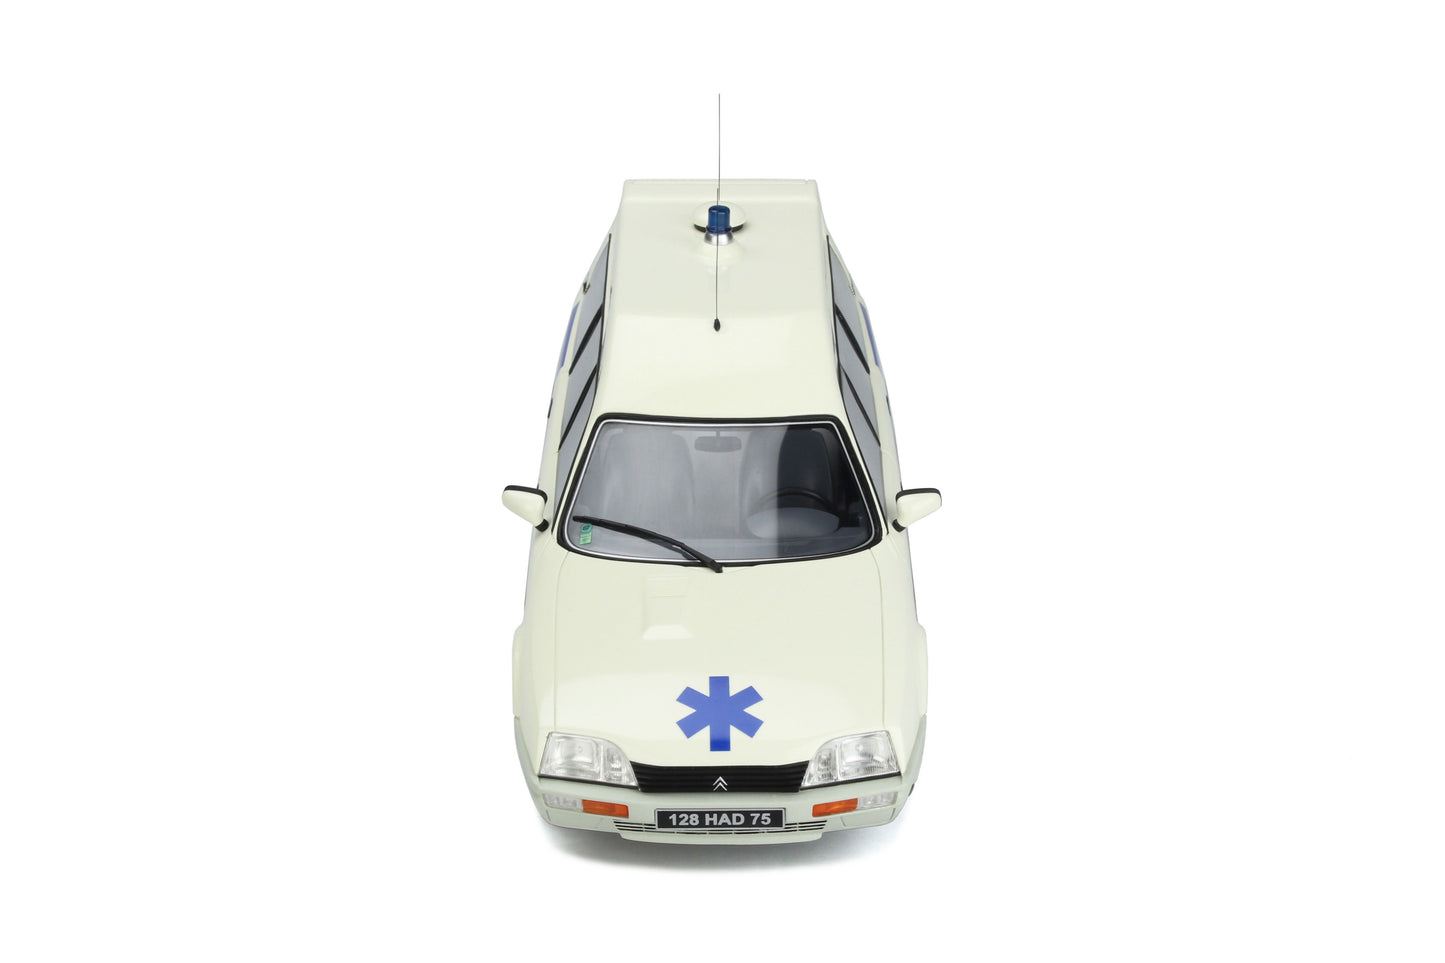 OTTO 1:18 1987 Citroen CX Break Ambulance Quasar Heuliez OT367